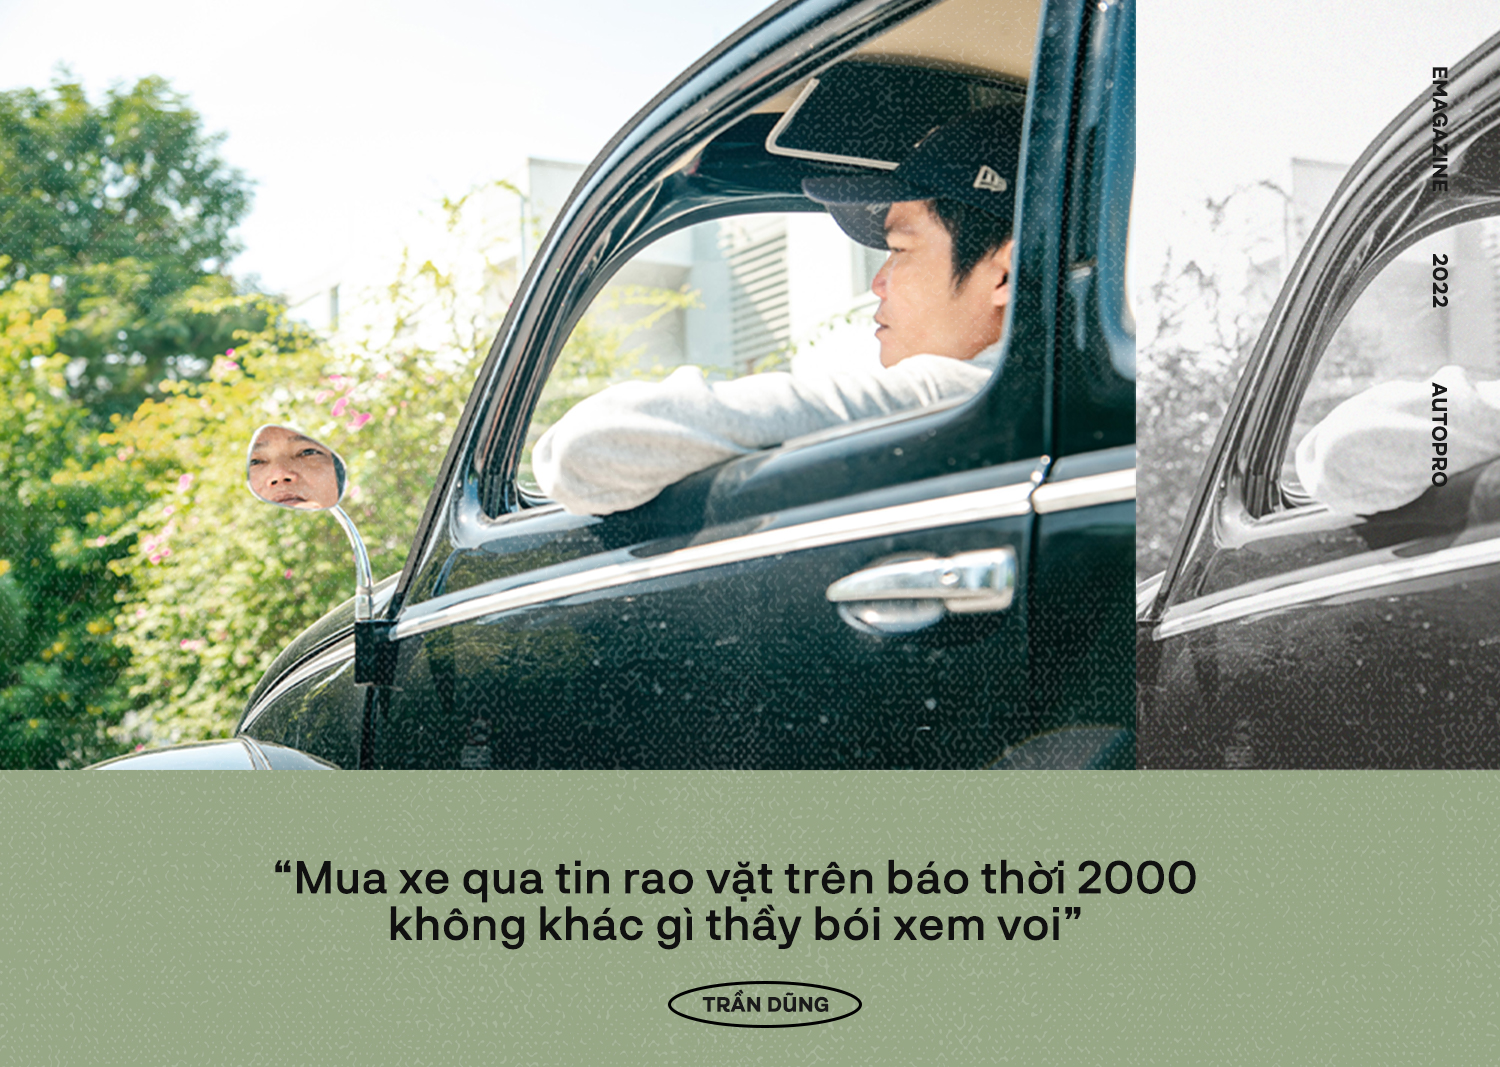 Chủ ‘con bọ kính chẻ’ hàng độc cùng bộ sưu tập xe cổ khủng tại Hà Nội: ‘Từng bới đống báo cũ vỉa hè để tìm được đam mê’ - Ảnh 5.